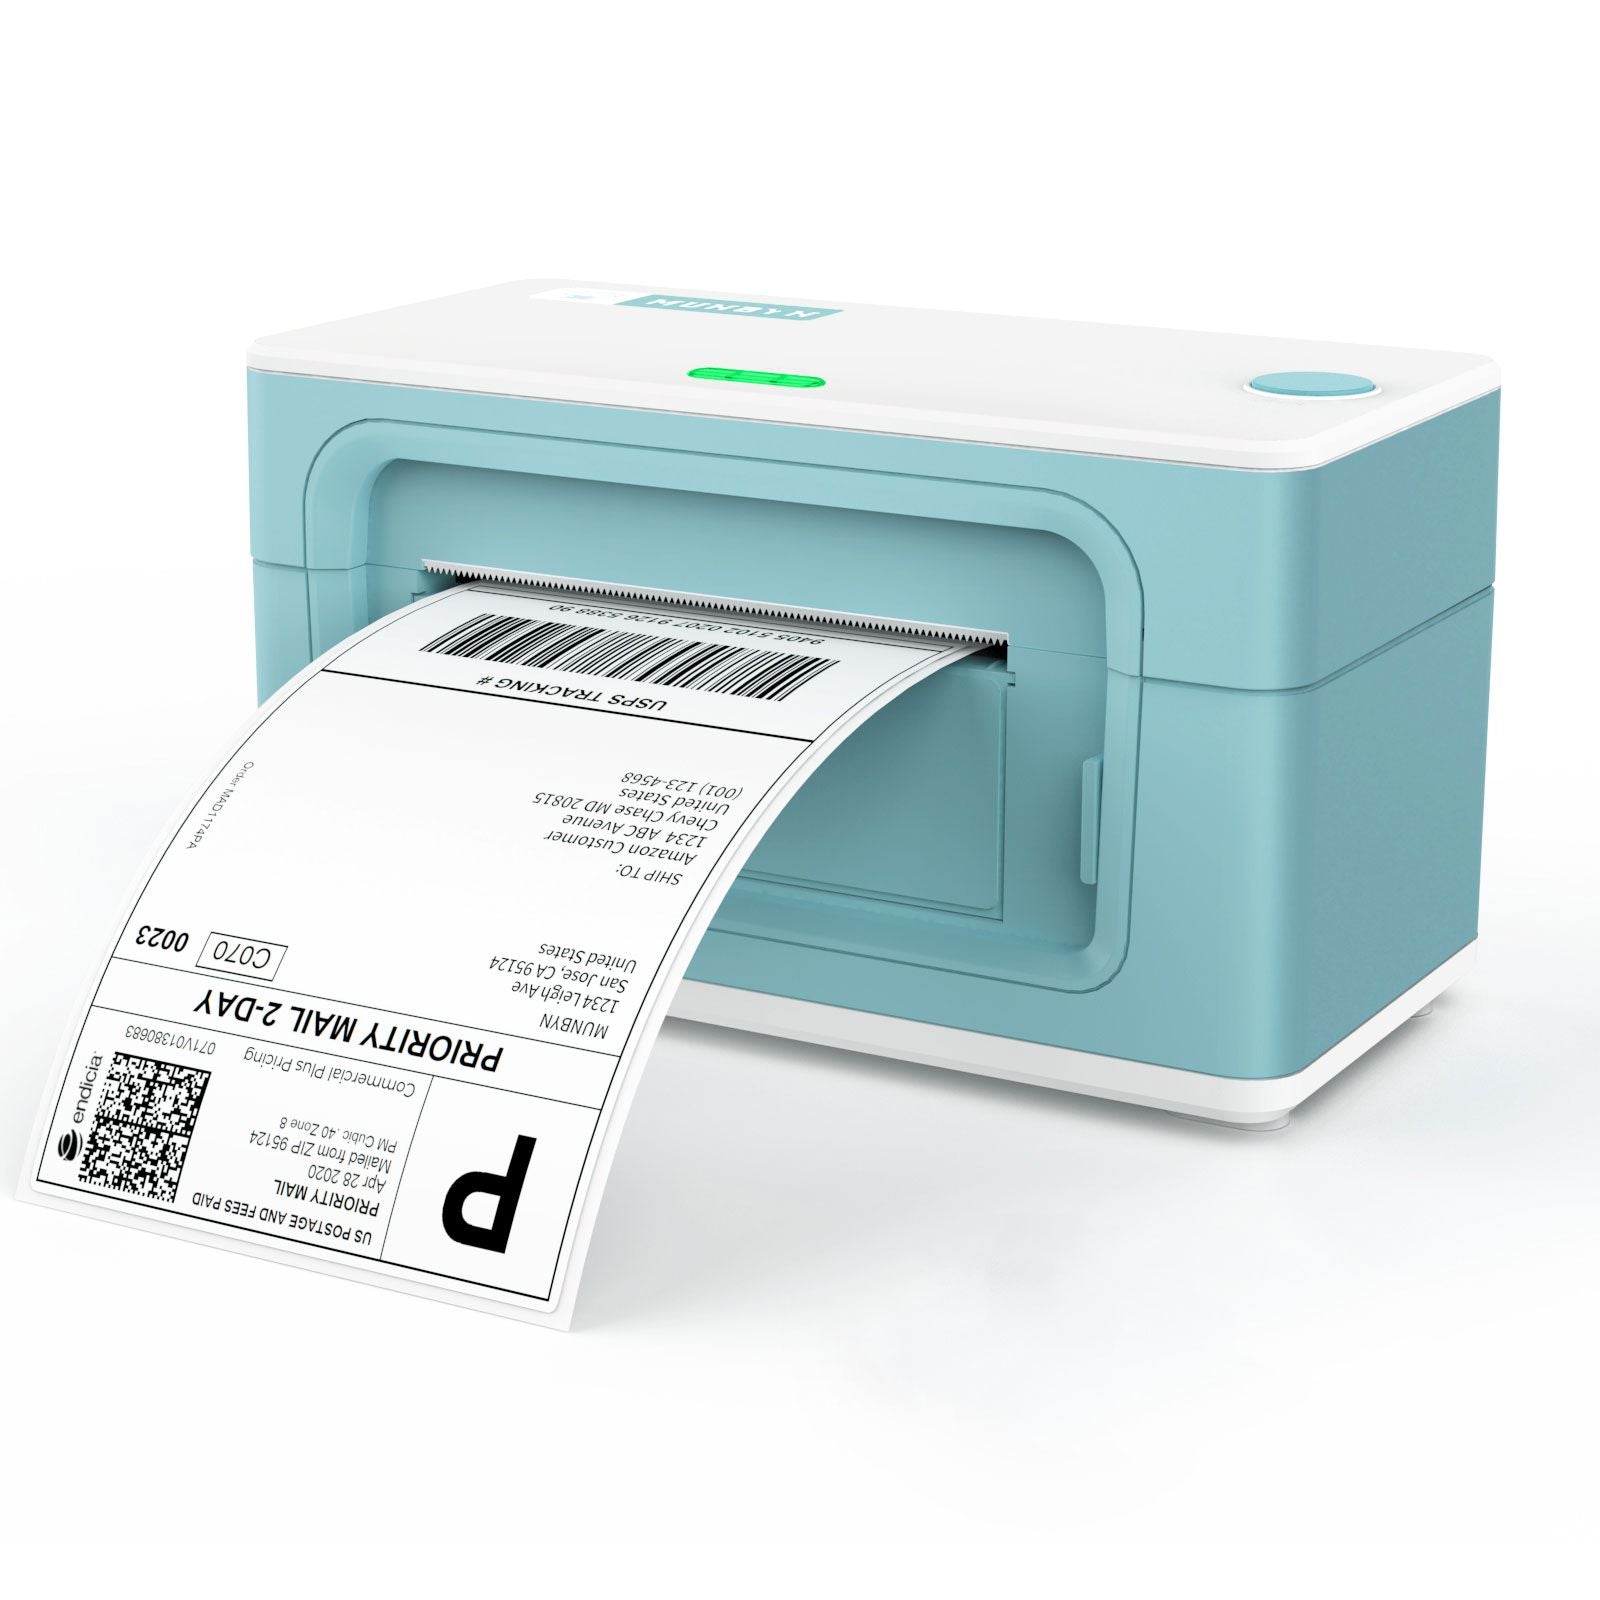 MUNBYN® RealWriter 941 Thermal Shipping Label Printer